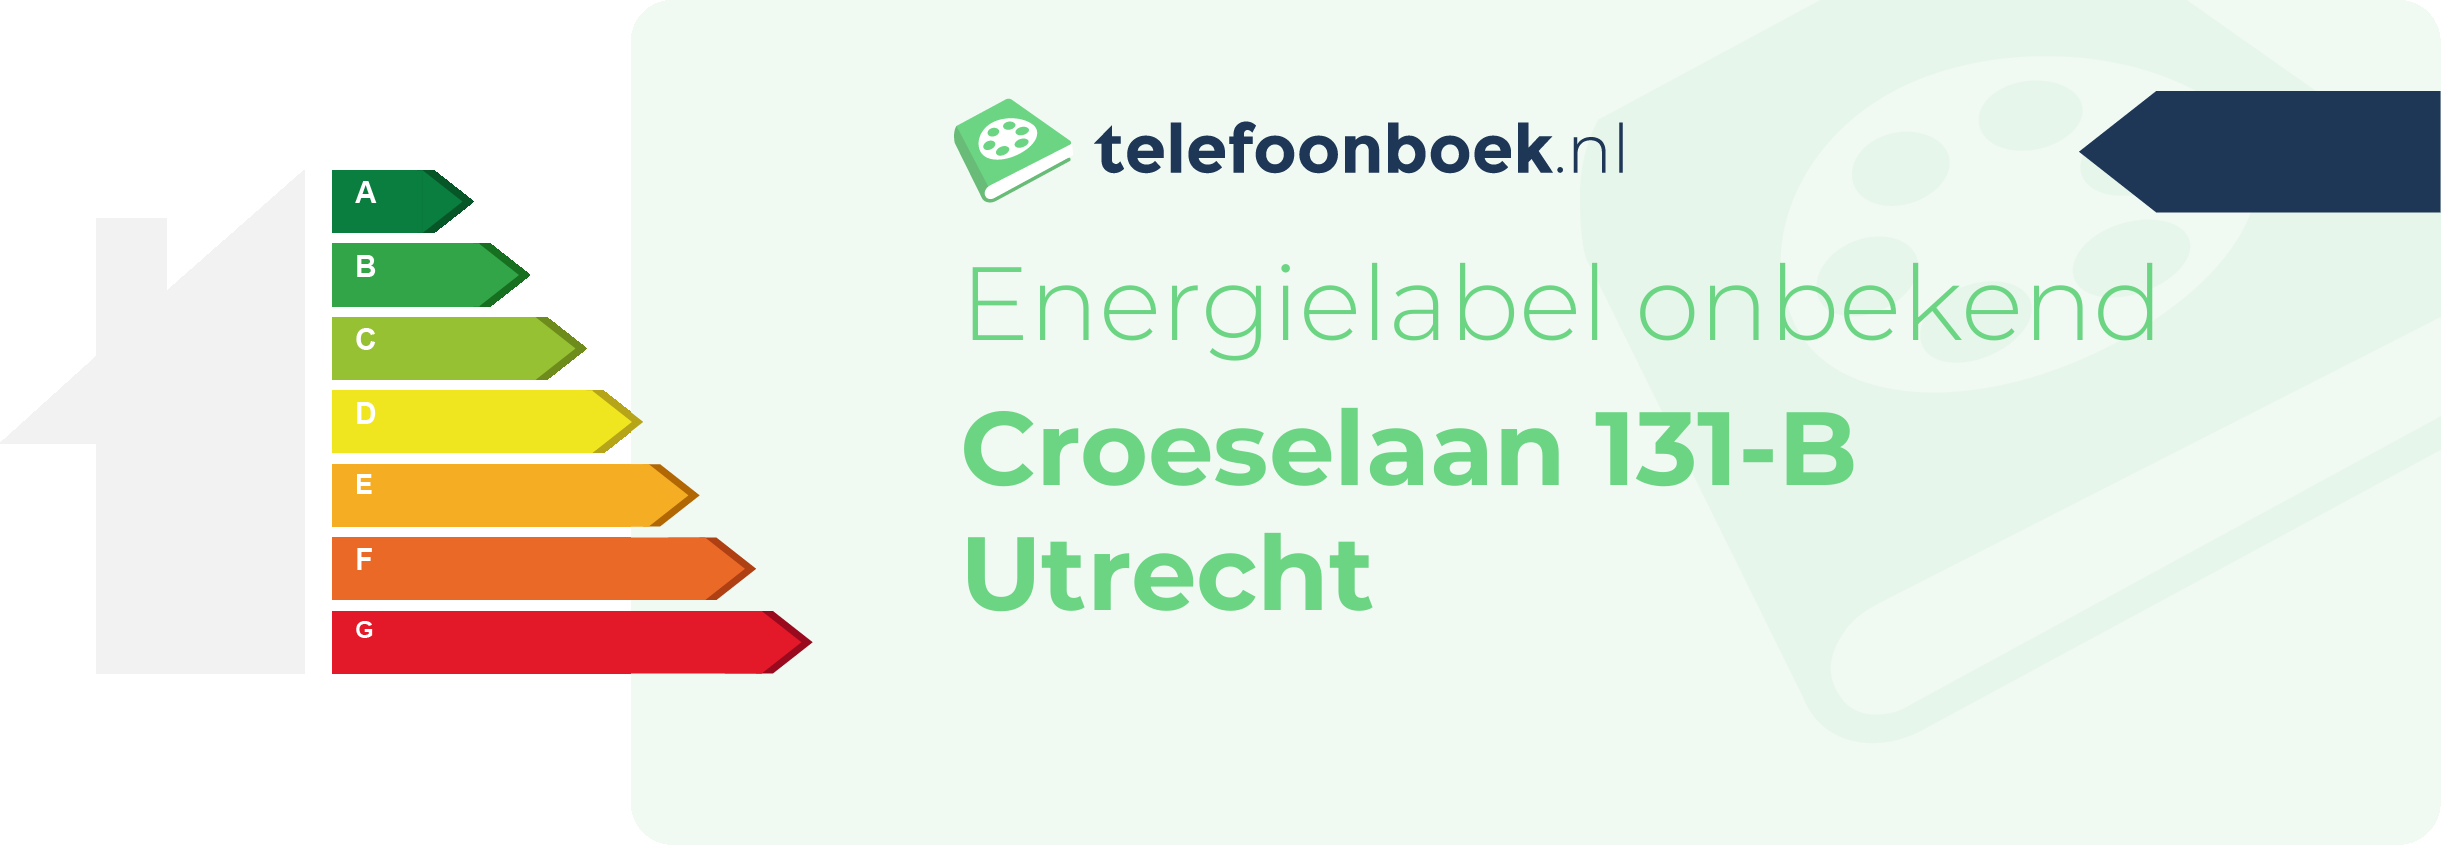 Energielabel Croeselaan 131-B Utrecht